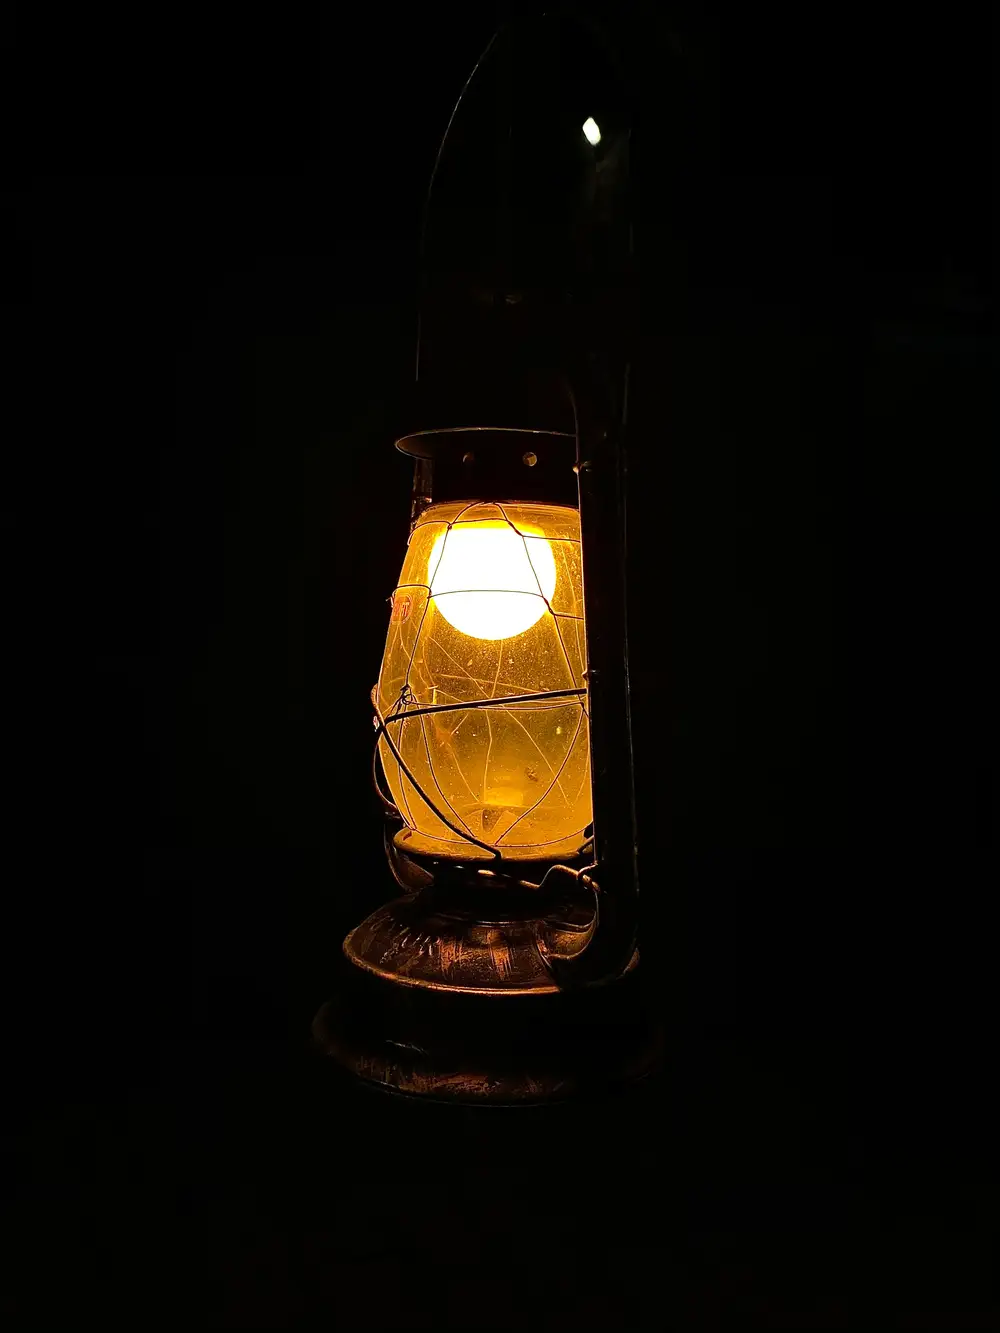 A lit lantern